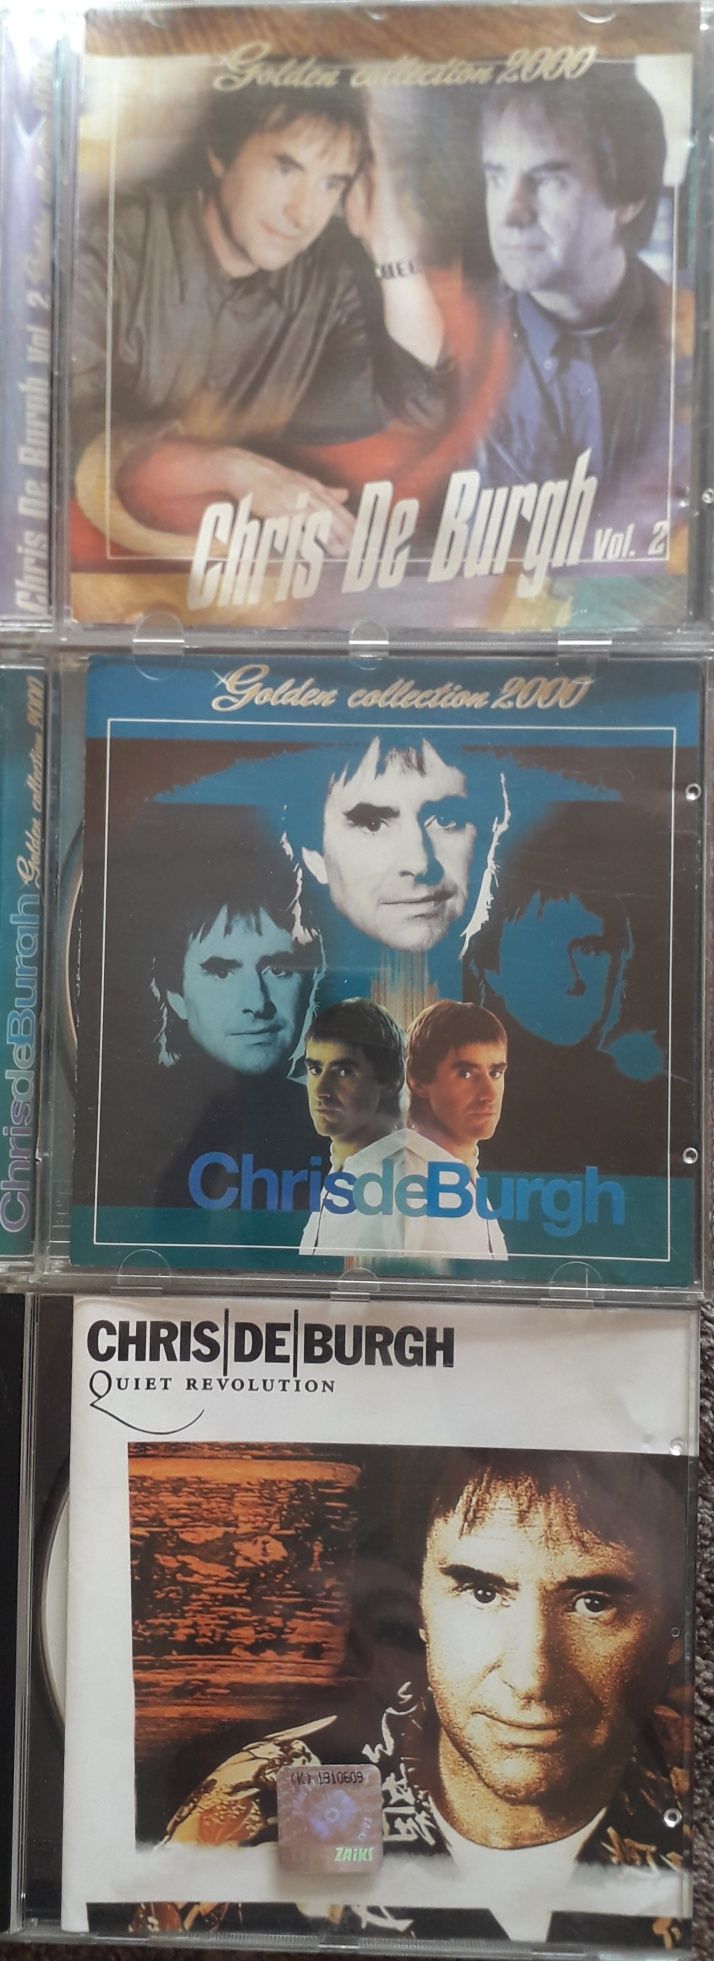 Chris de burgh CD zestaw trzech płyt